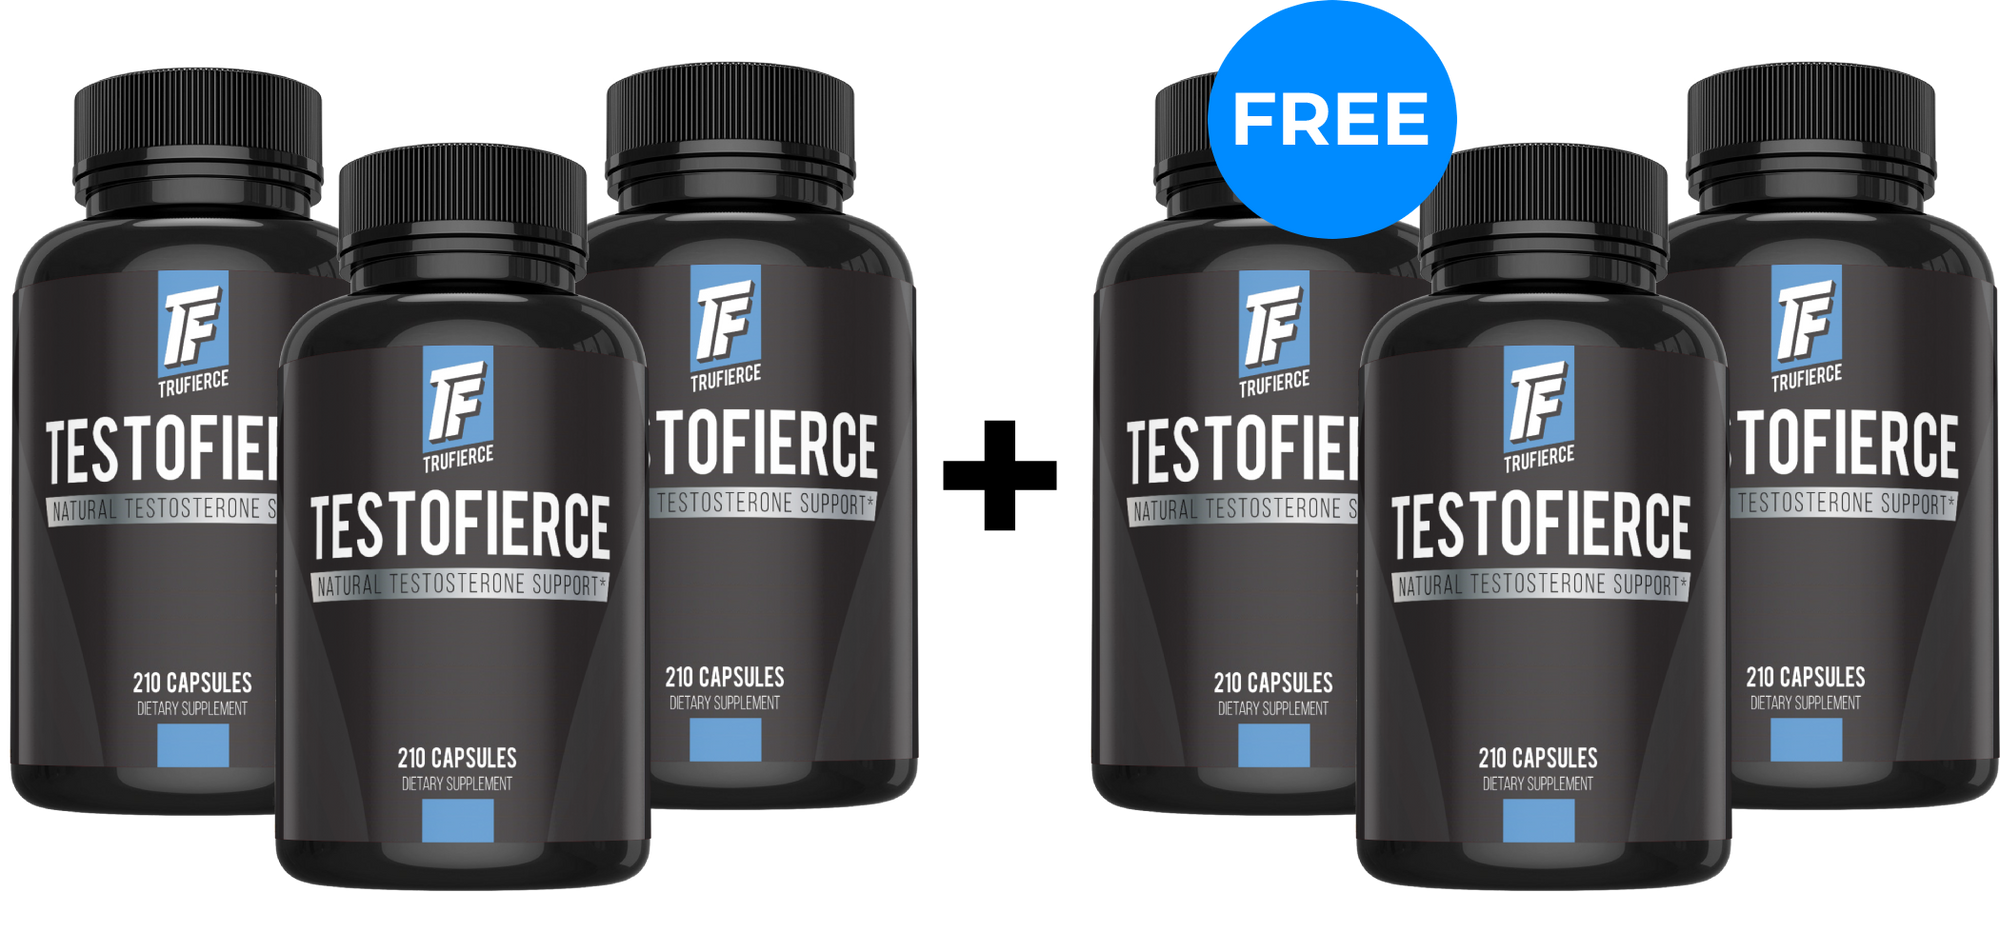 TestoFIERCE | Buy 3, Get 3 FREE